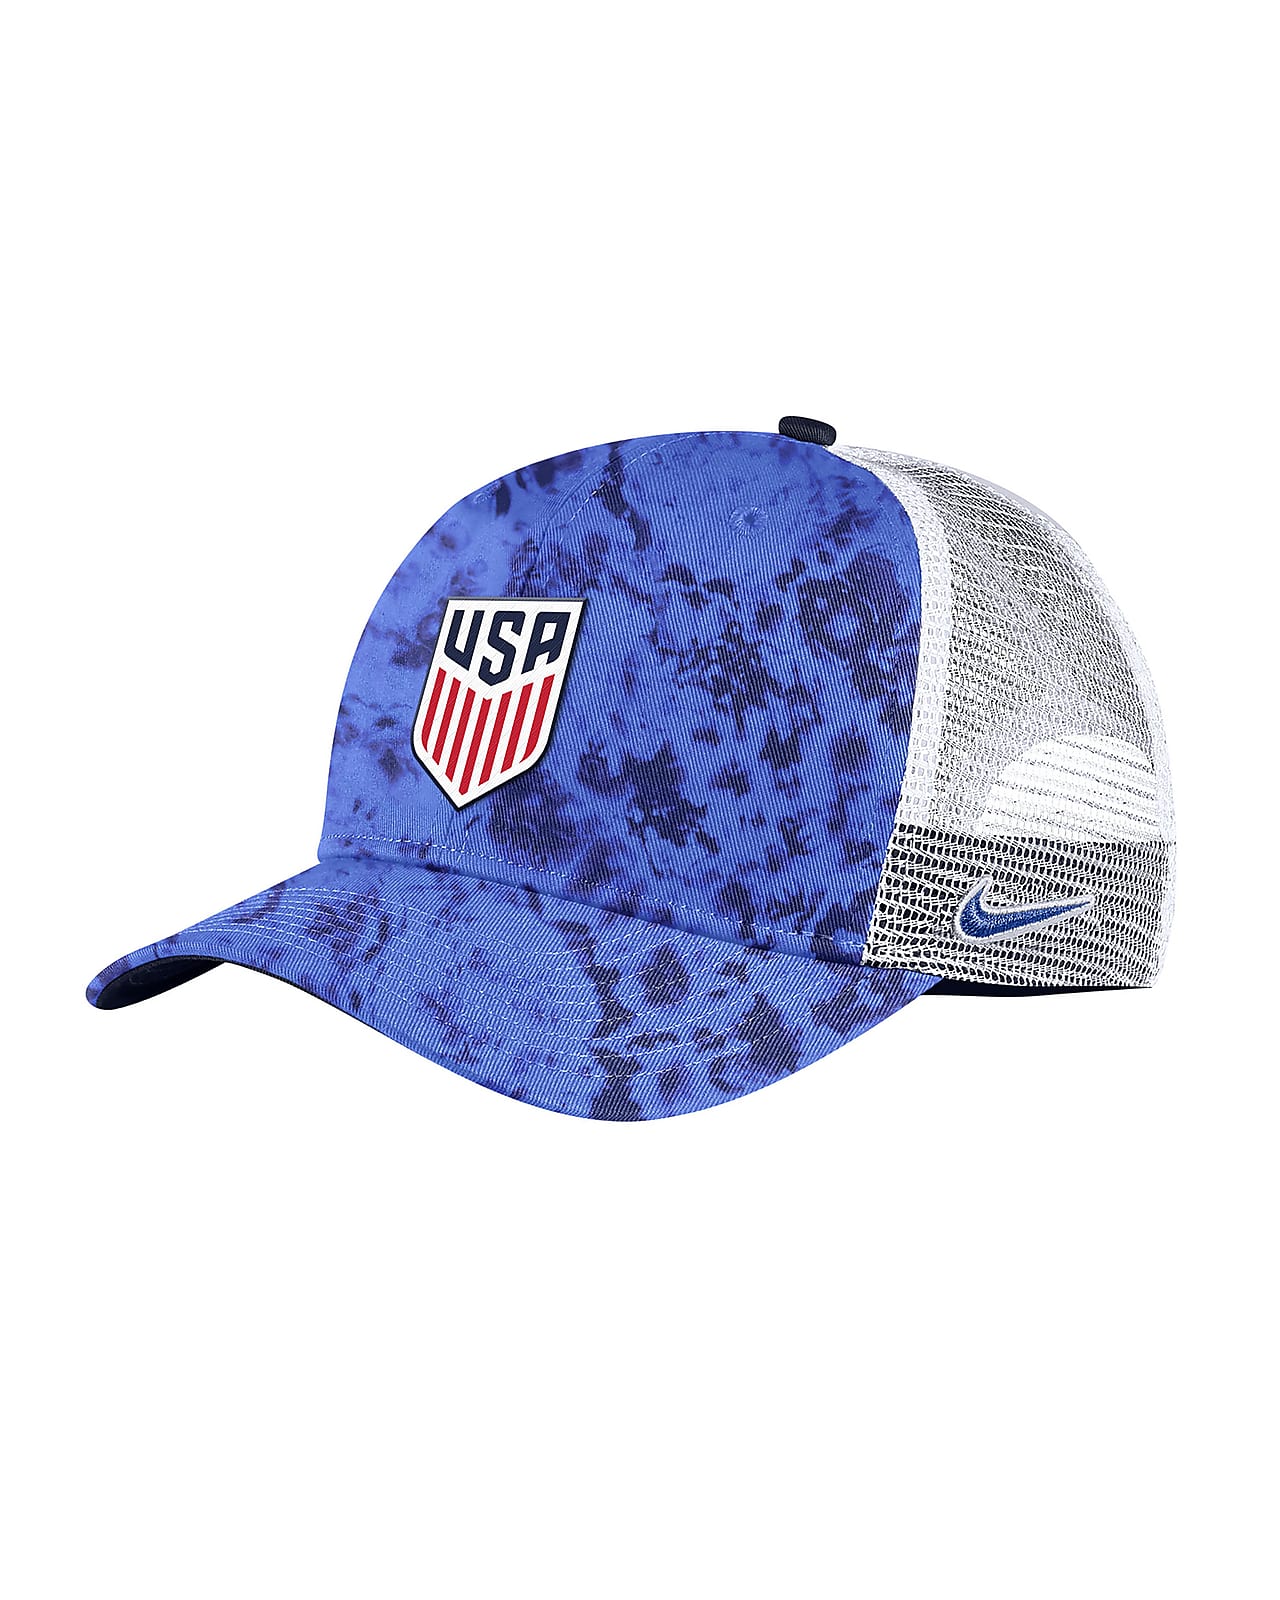 USMNT Classic 99 Men's Nike Trucker Hat.